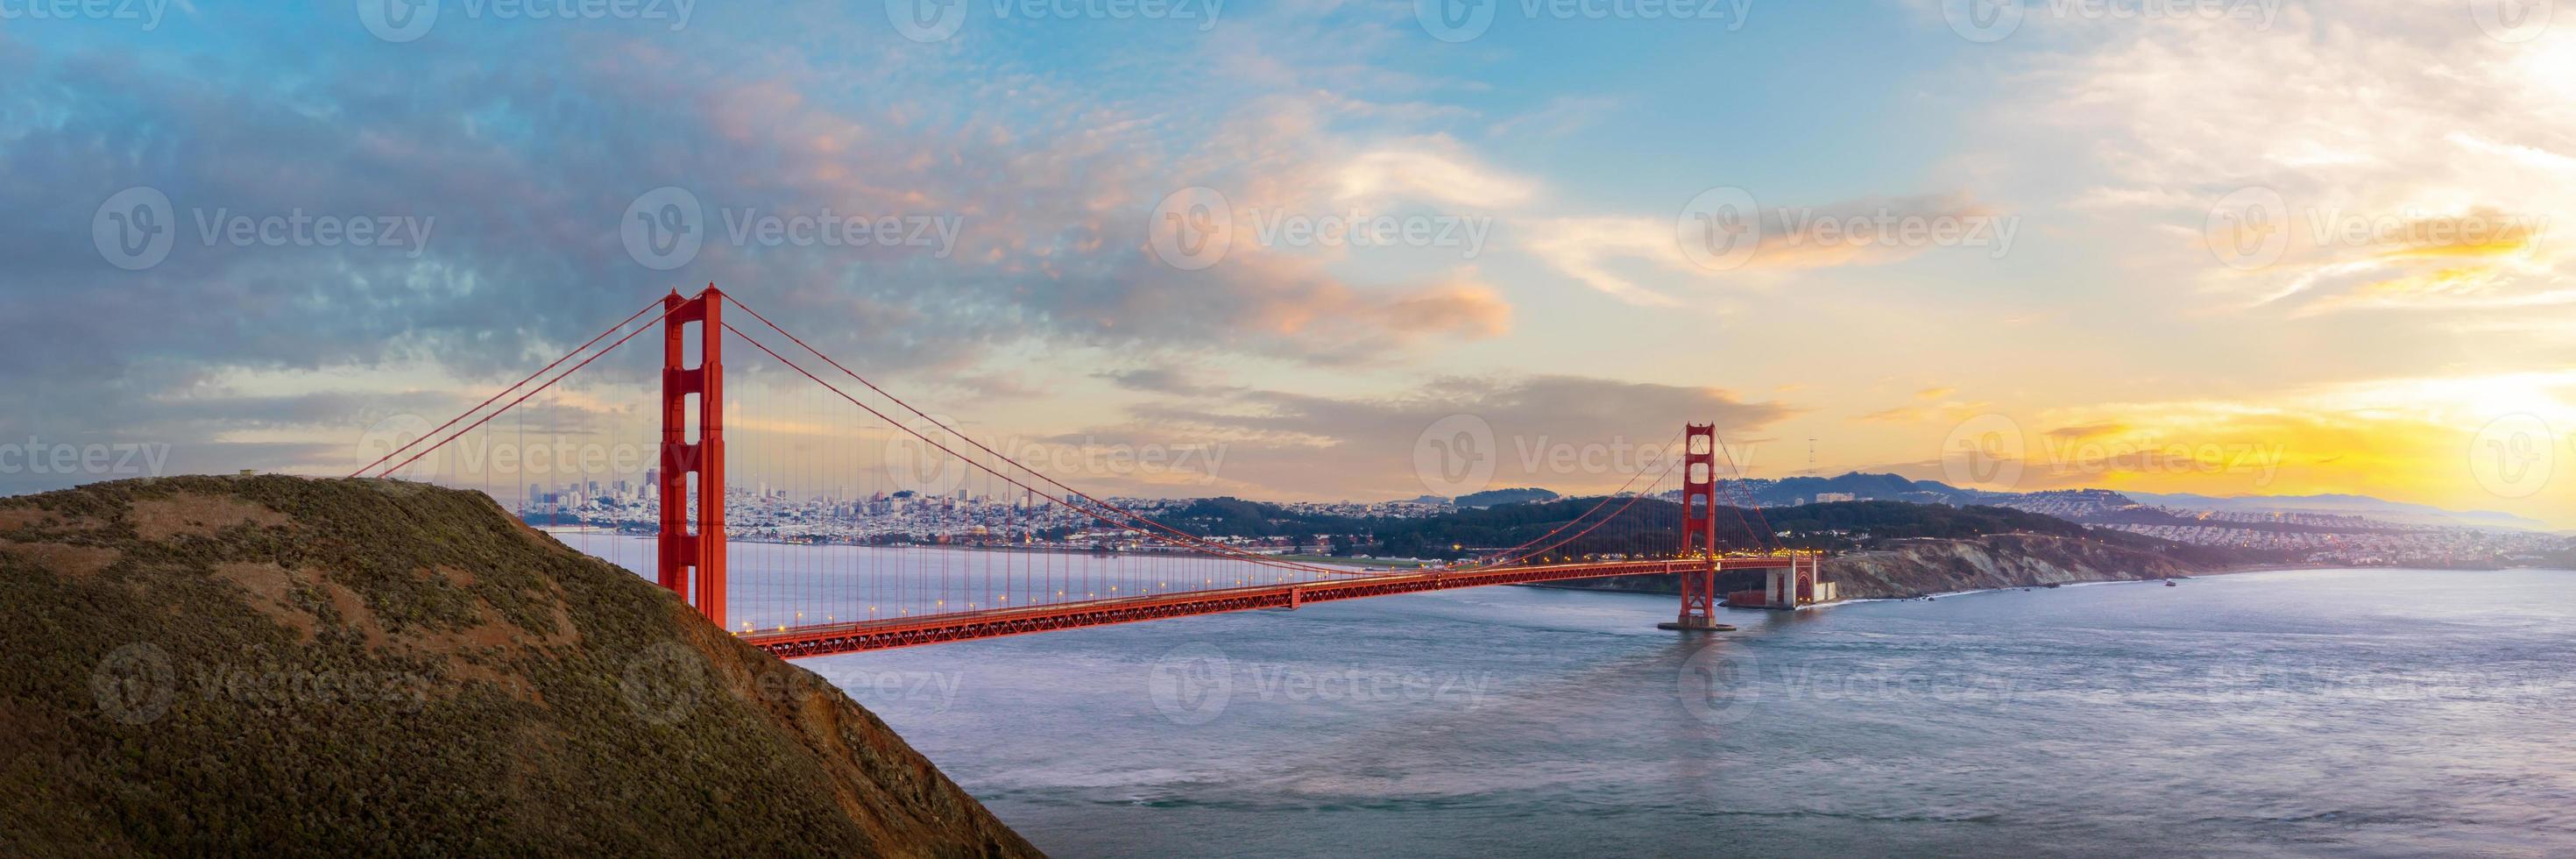 panoramautsikt över Golden Gate Bridge på solnedgången foto